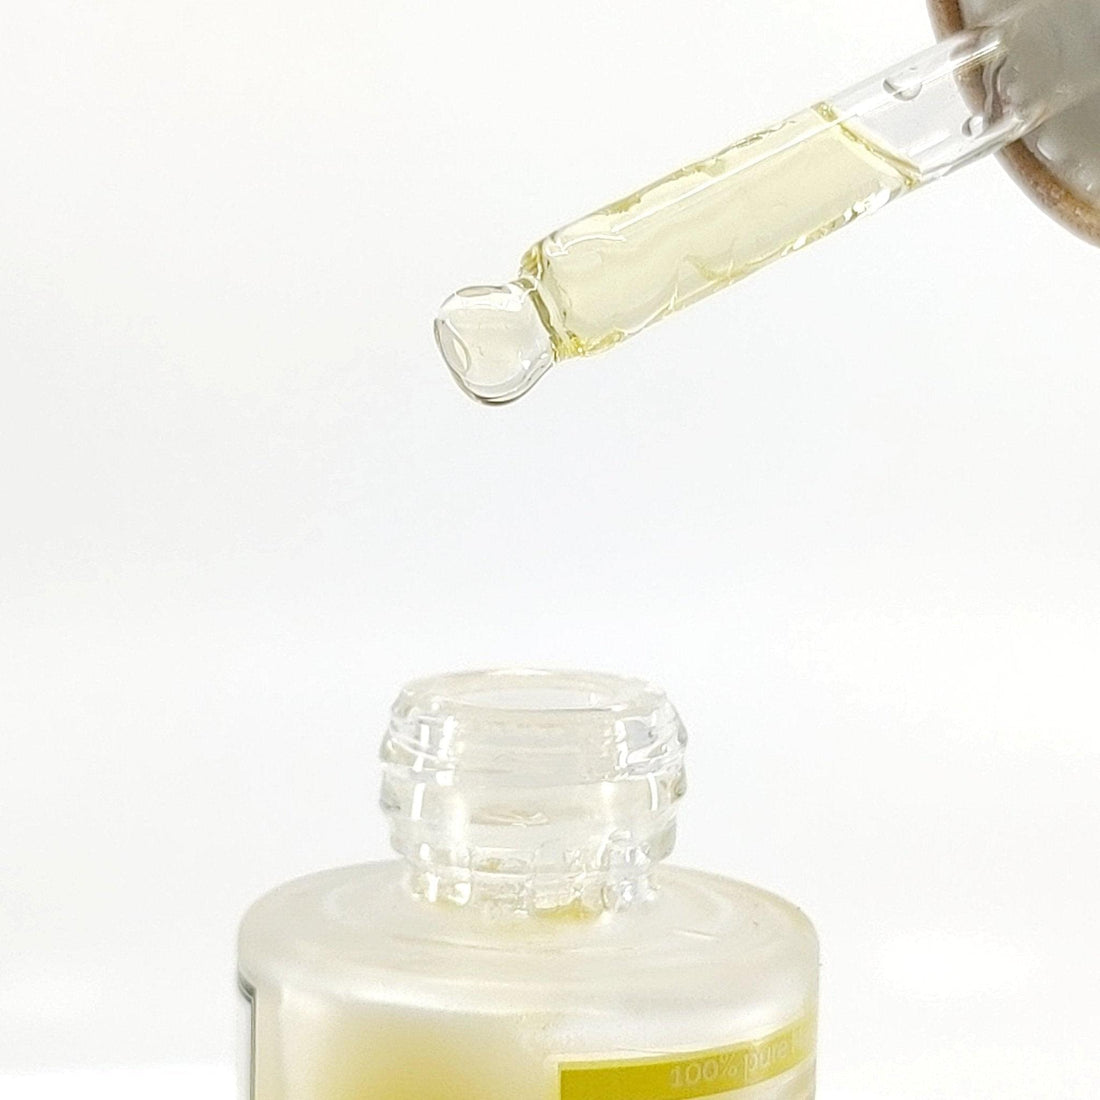 Pojemnik bułgarski – najczystszy organiczny organiczny. Marula oil